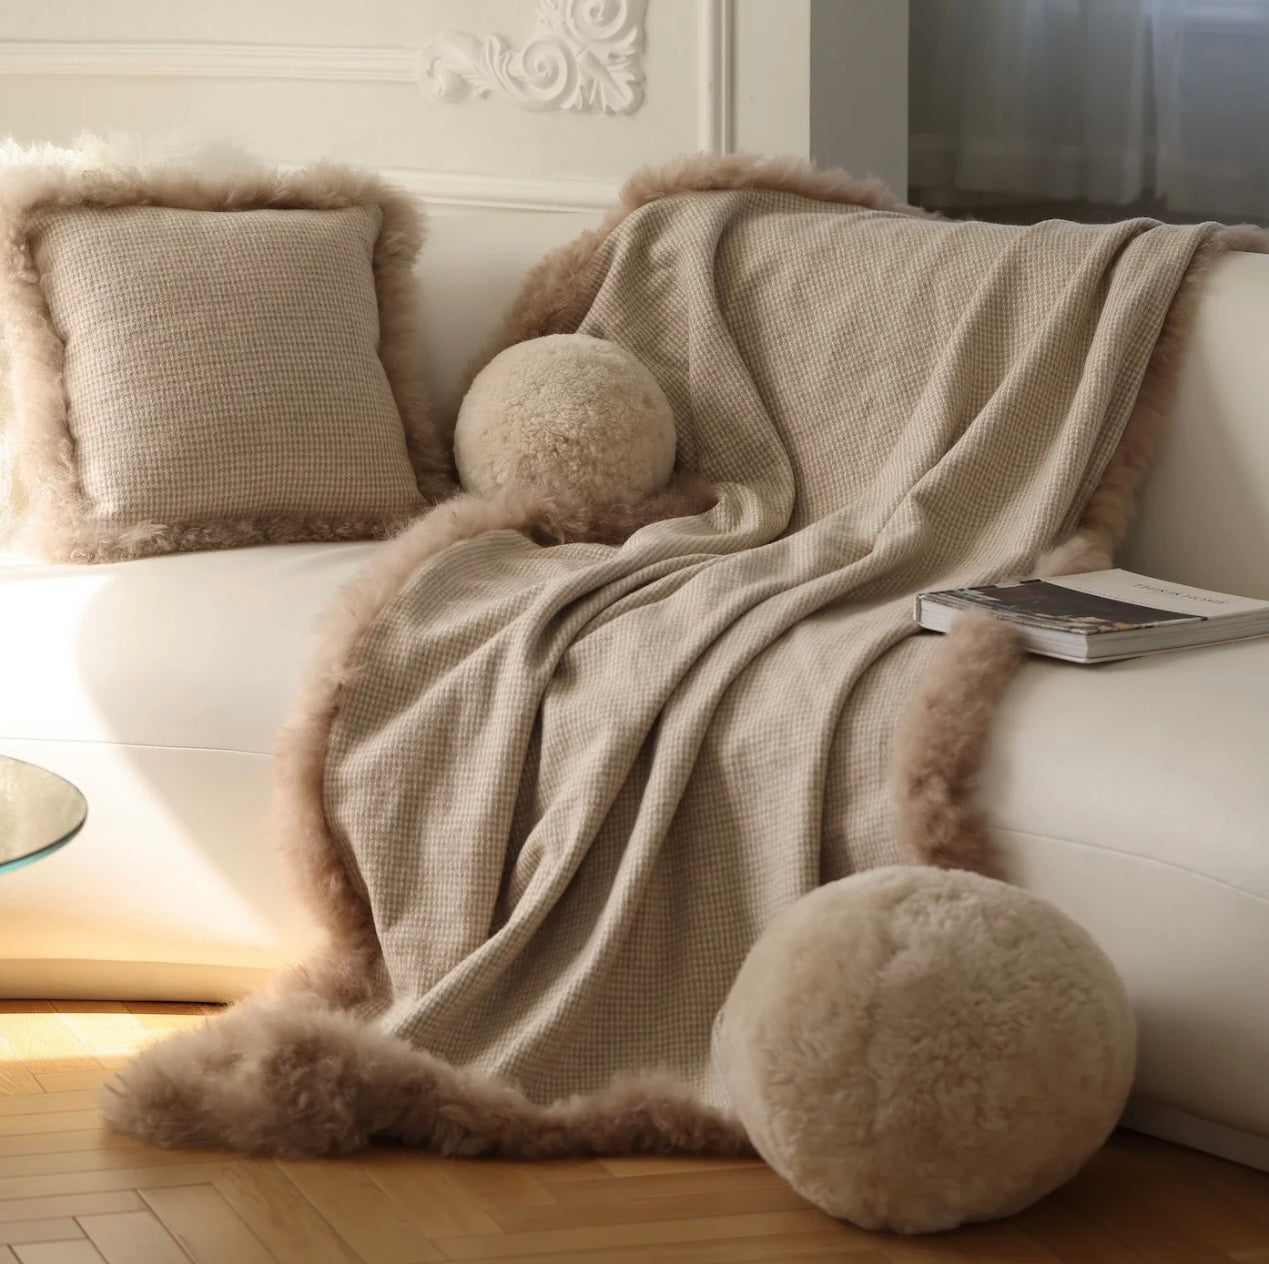 Merinowolle Überwurfdecke Tagesdecke Sofadecke Bettdecke Kuscheldecke Plaid mit Tibetfellbesatz beige 120x180 cm